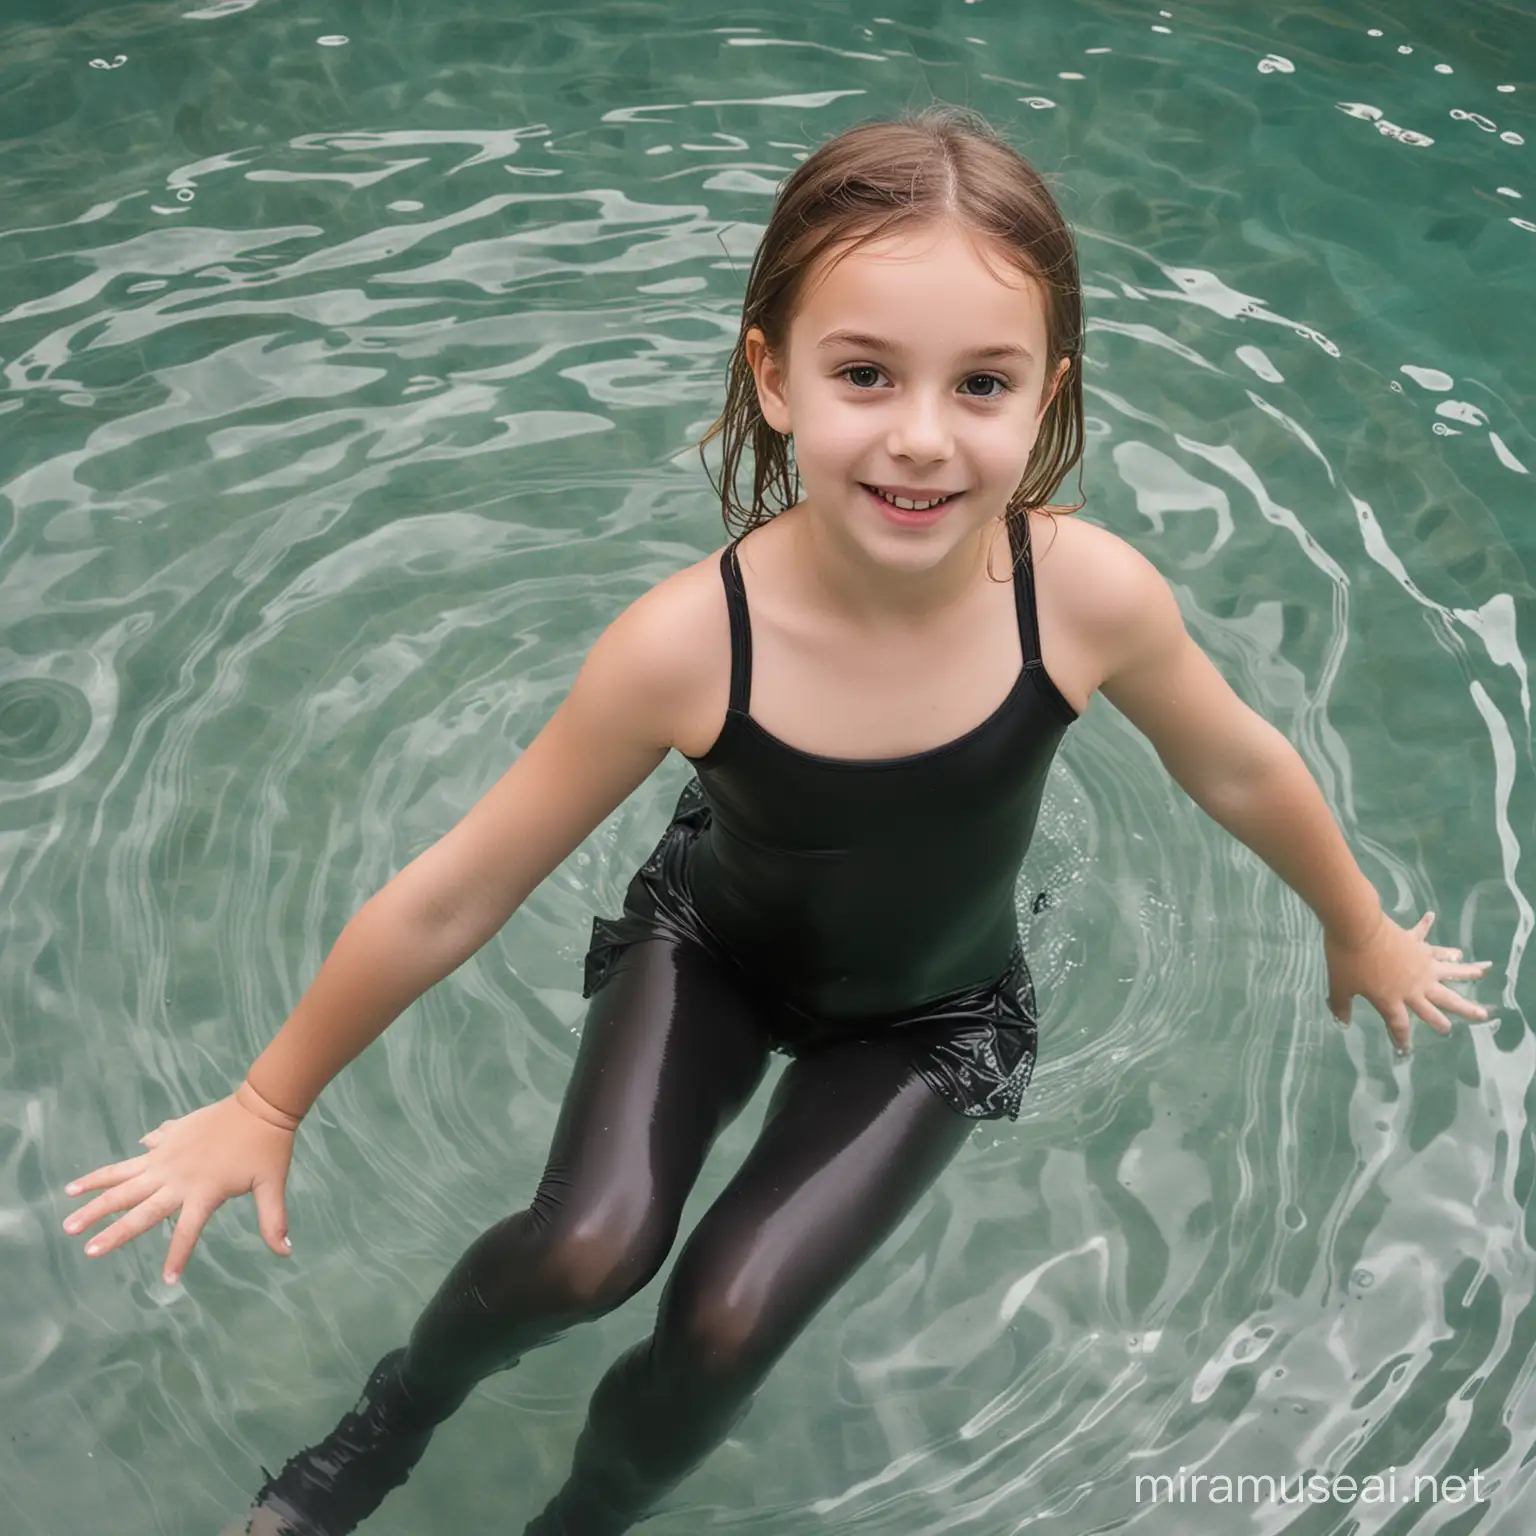 Little girl wearing black pantyhose swimming